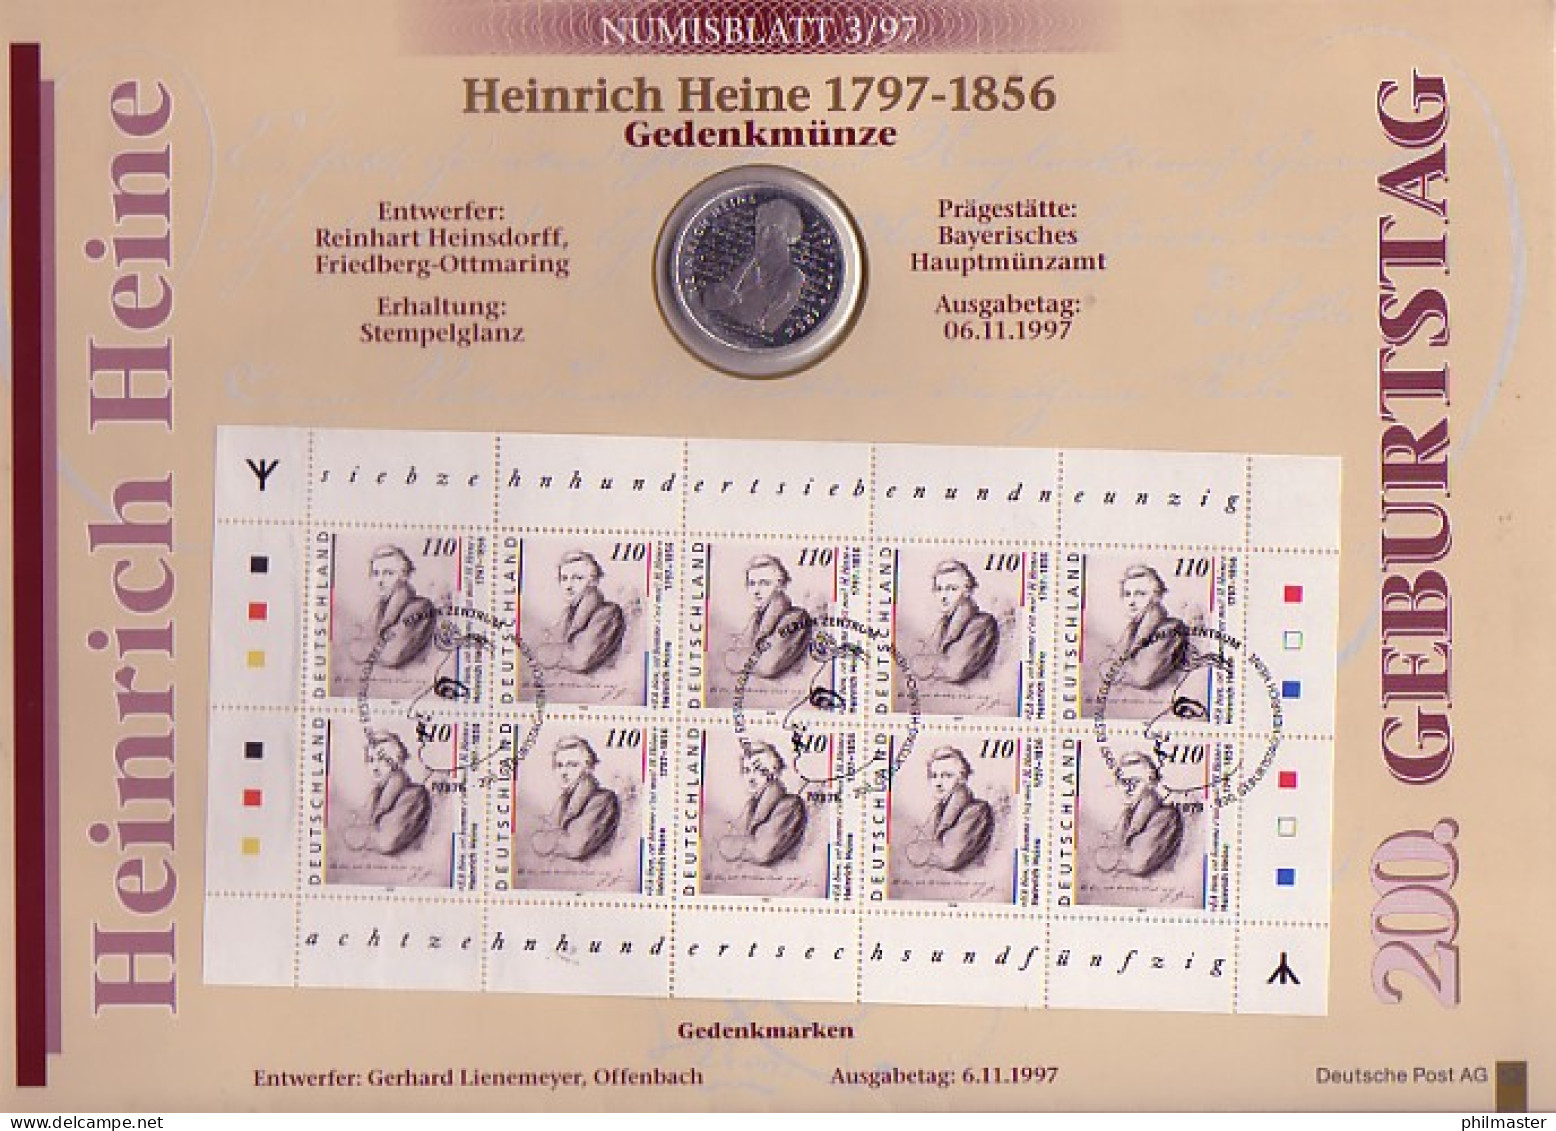 1962 Heine 1. Auflage Numisblatt 3/97 - Mit Runen, Echt Mit Stahlstempel ESSt - Coin Envelopes